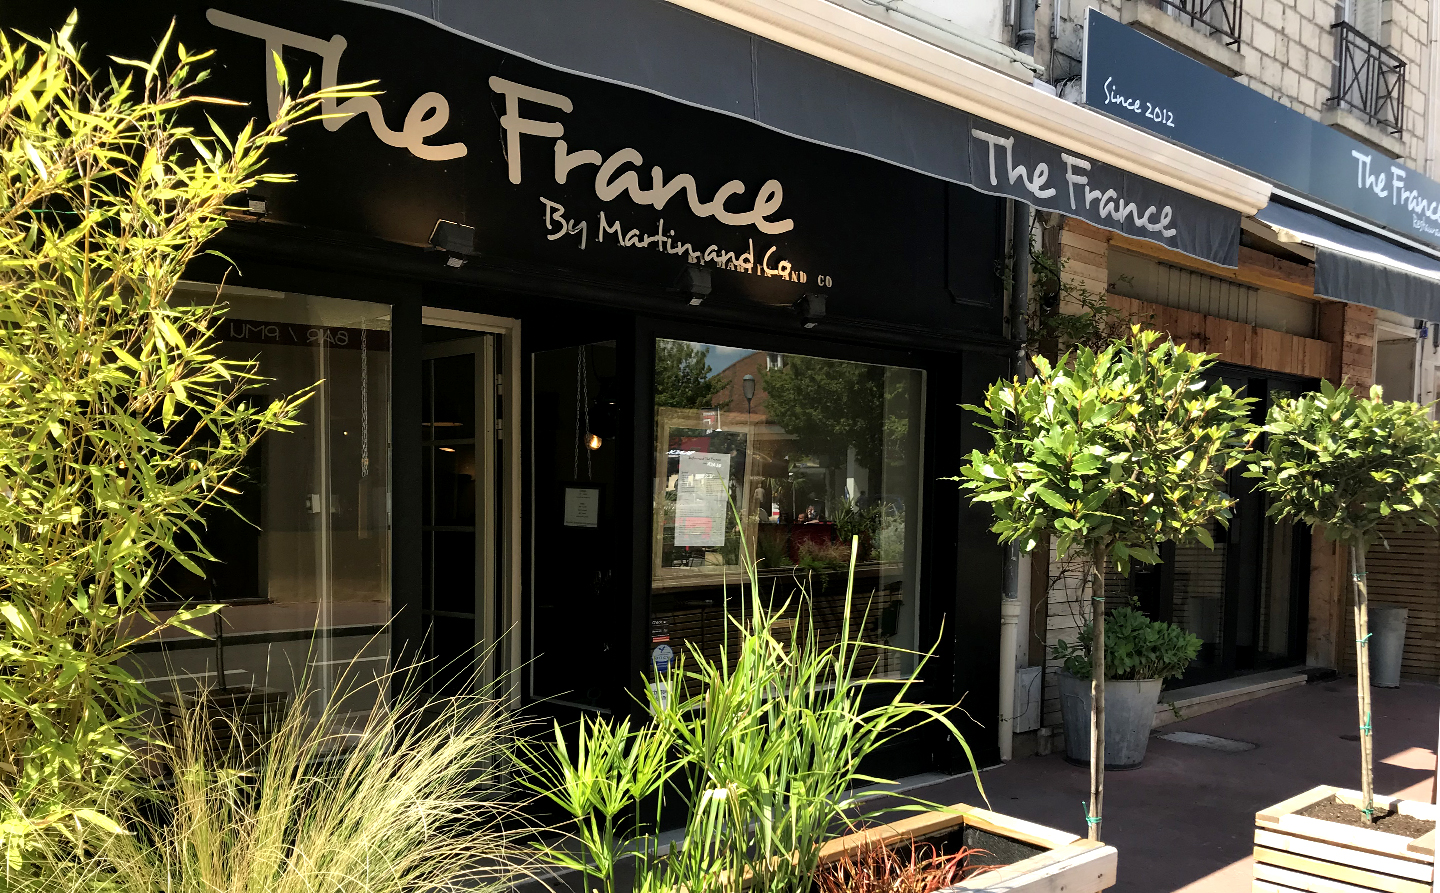 Restaurant The France